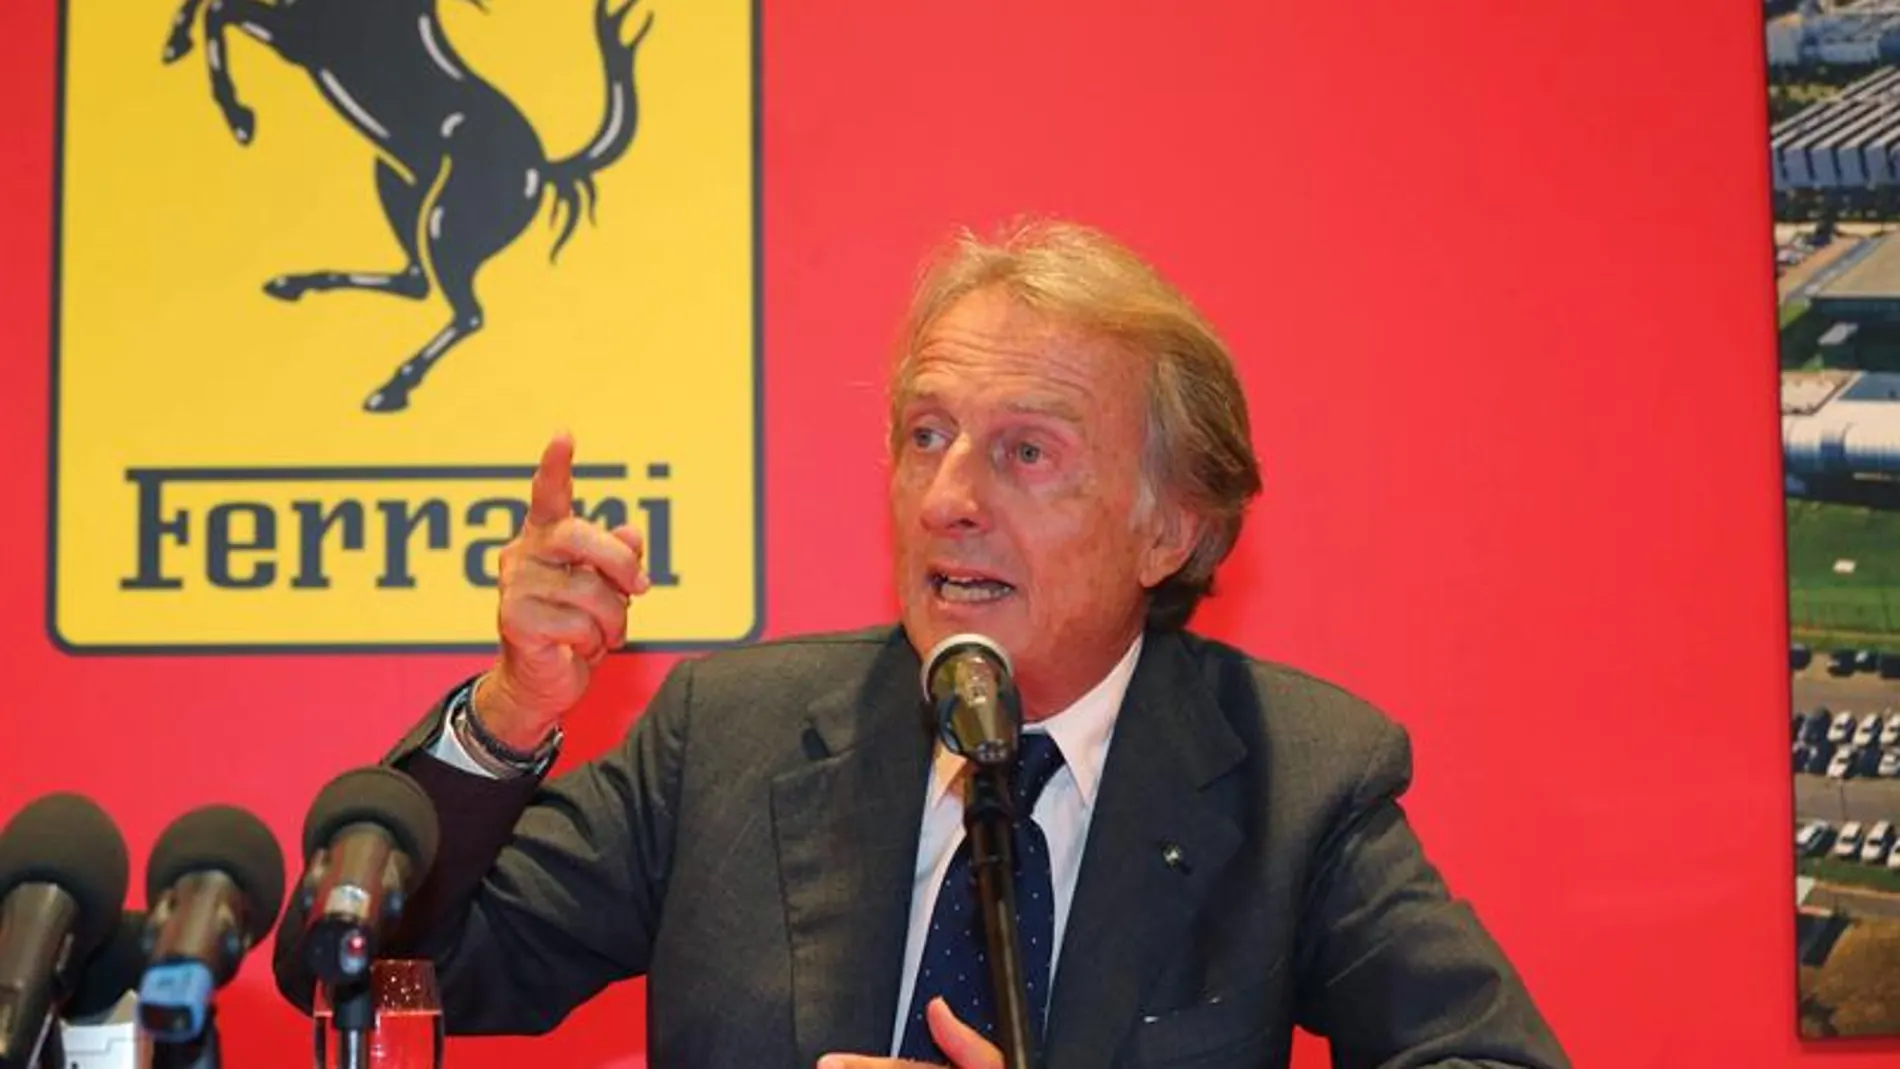 El presidente de Ferrari, Luca Cordero di Montezemolo, en la rueda de prensa en Maranello